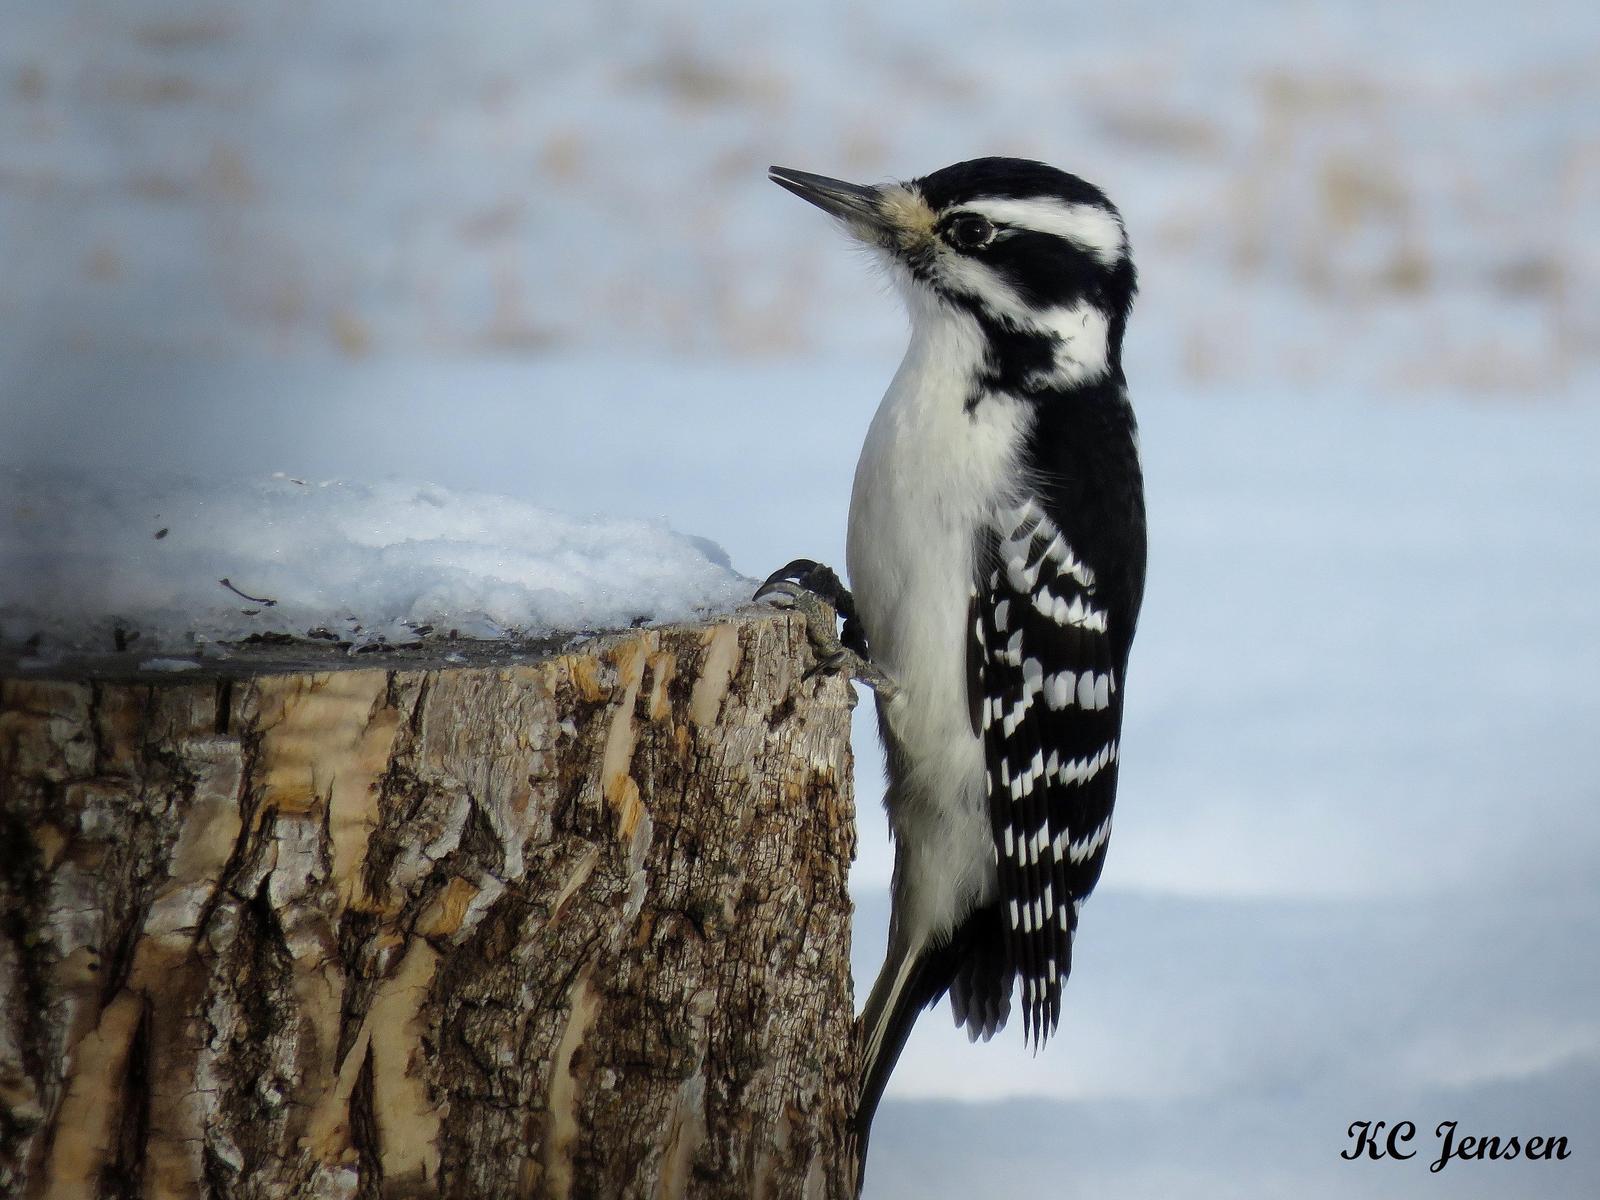 Hairy Woodpecker Photo by Kent Jensen